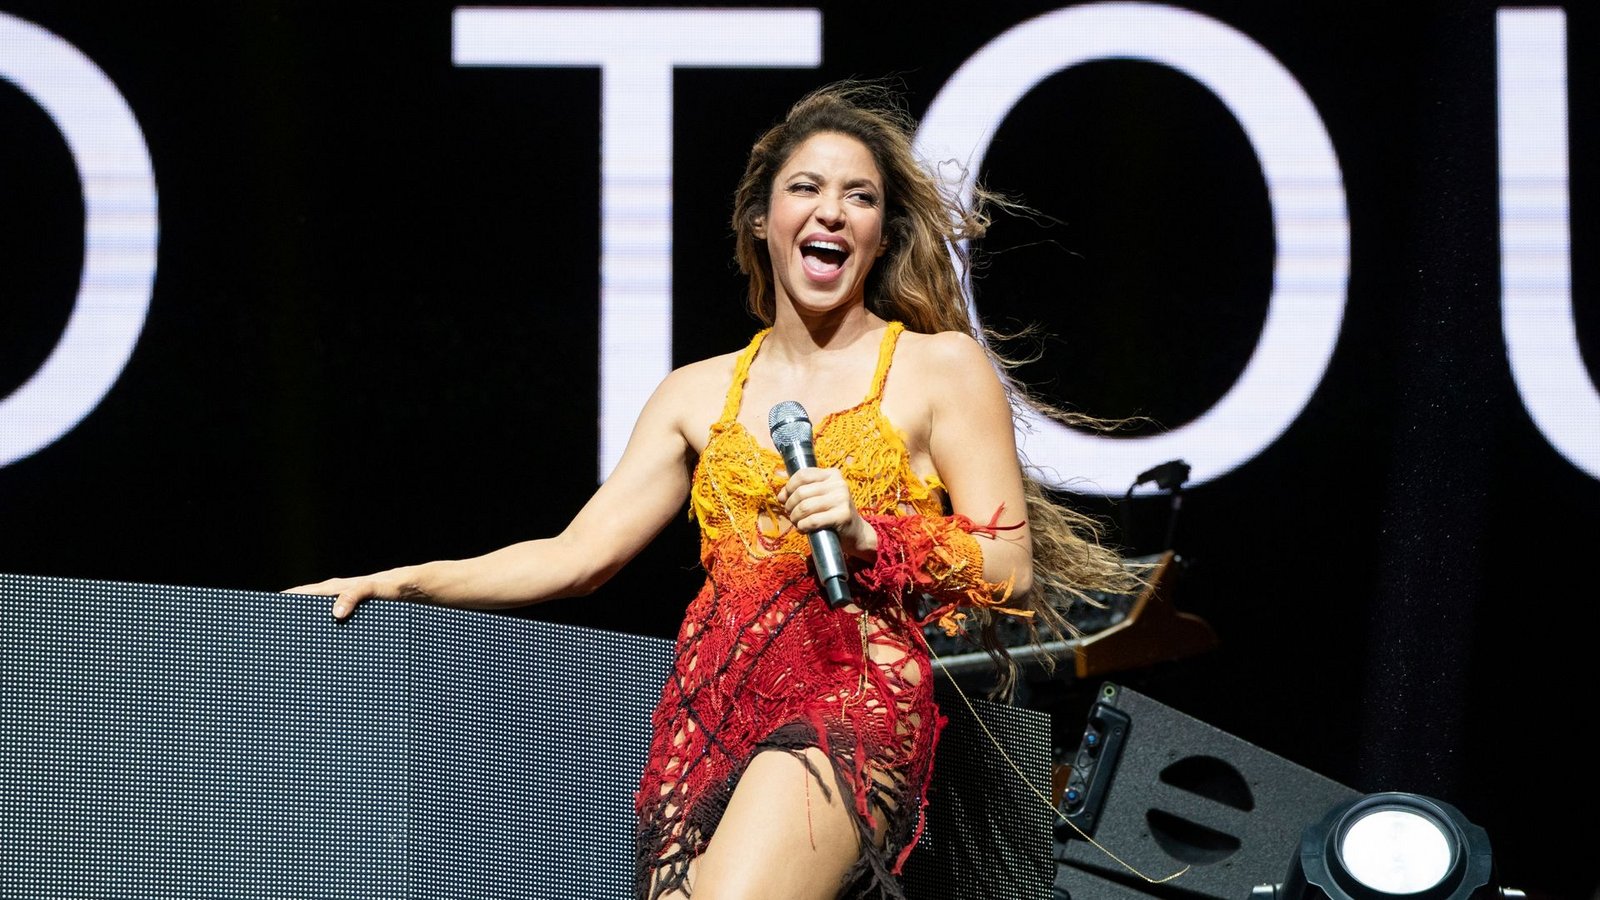 Die Pop-Ikone Shakira ist für ihre Hüftschwünge bekannt (Archivbild).Foto: Amy Harris/Invision/AP/dpa